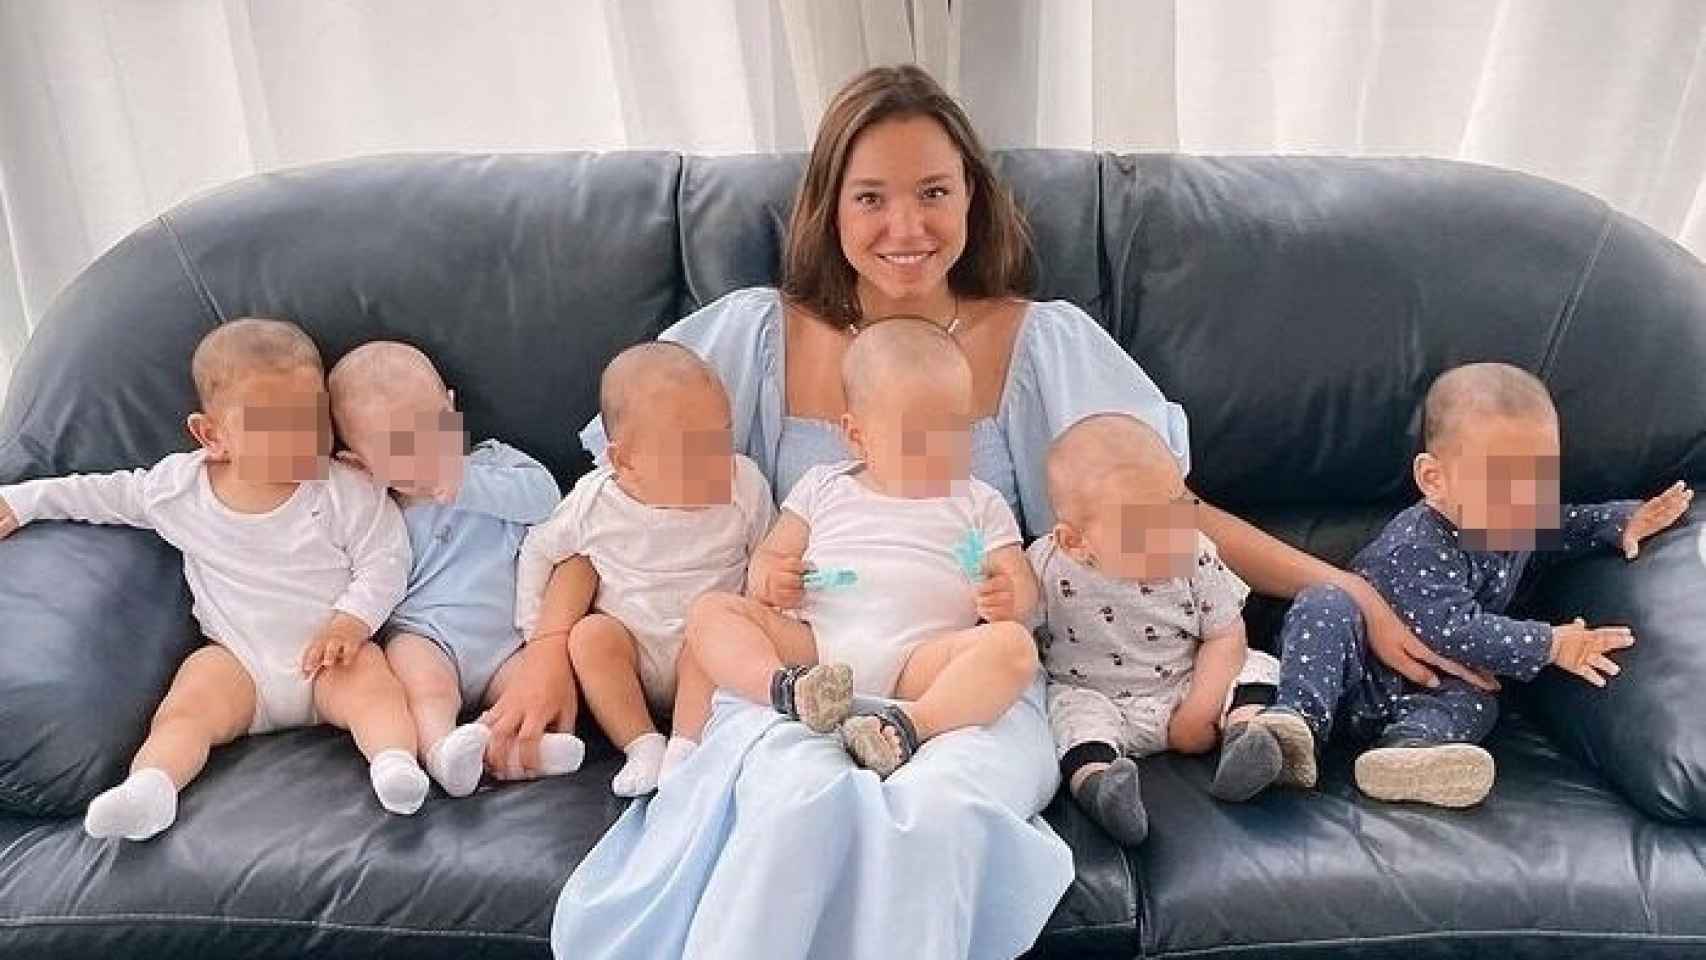 Kristina Ozturk con algunos de los bebés.